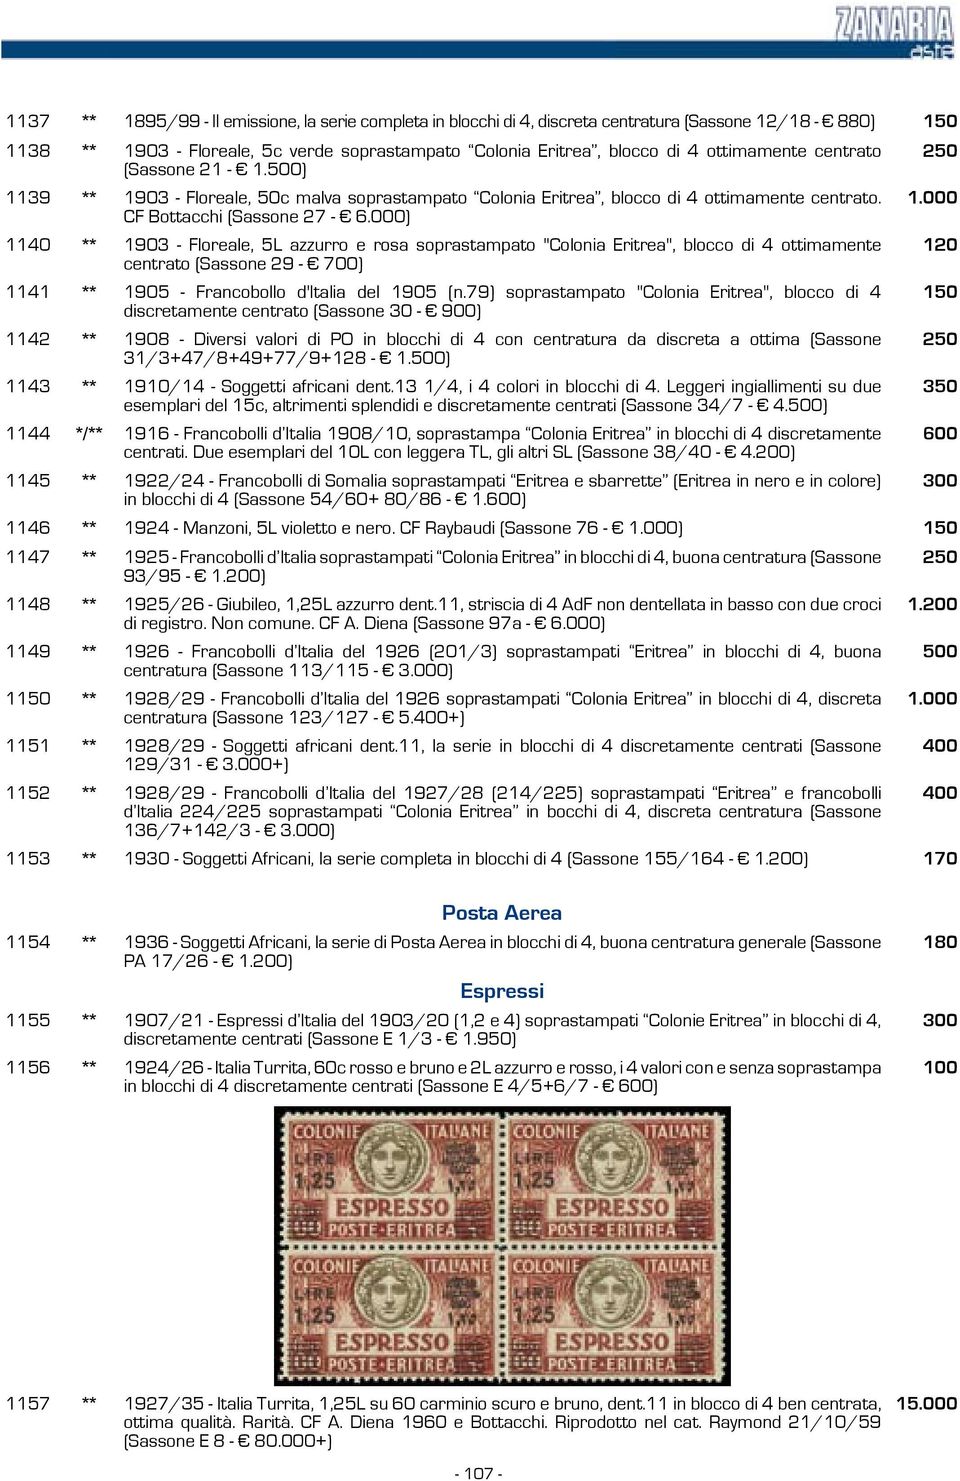 000 1140 ** 1903 - Floreale, 5L azzurro e rosa soprastampato "Colonia Eritrea", blocco di 4 ottimamente centrato (Sassone 29-700) 120 1141 ** 1905 - Francobollo d'italia del 1905 (n.